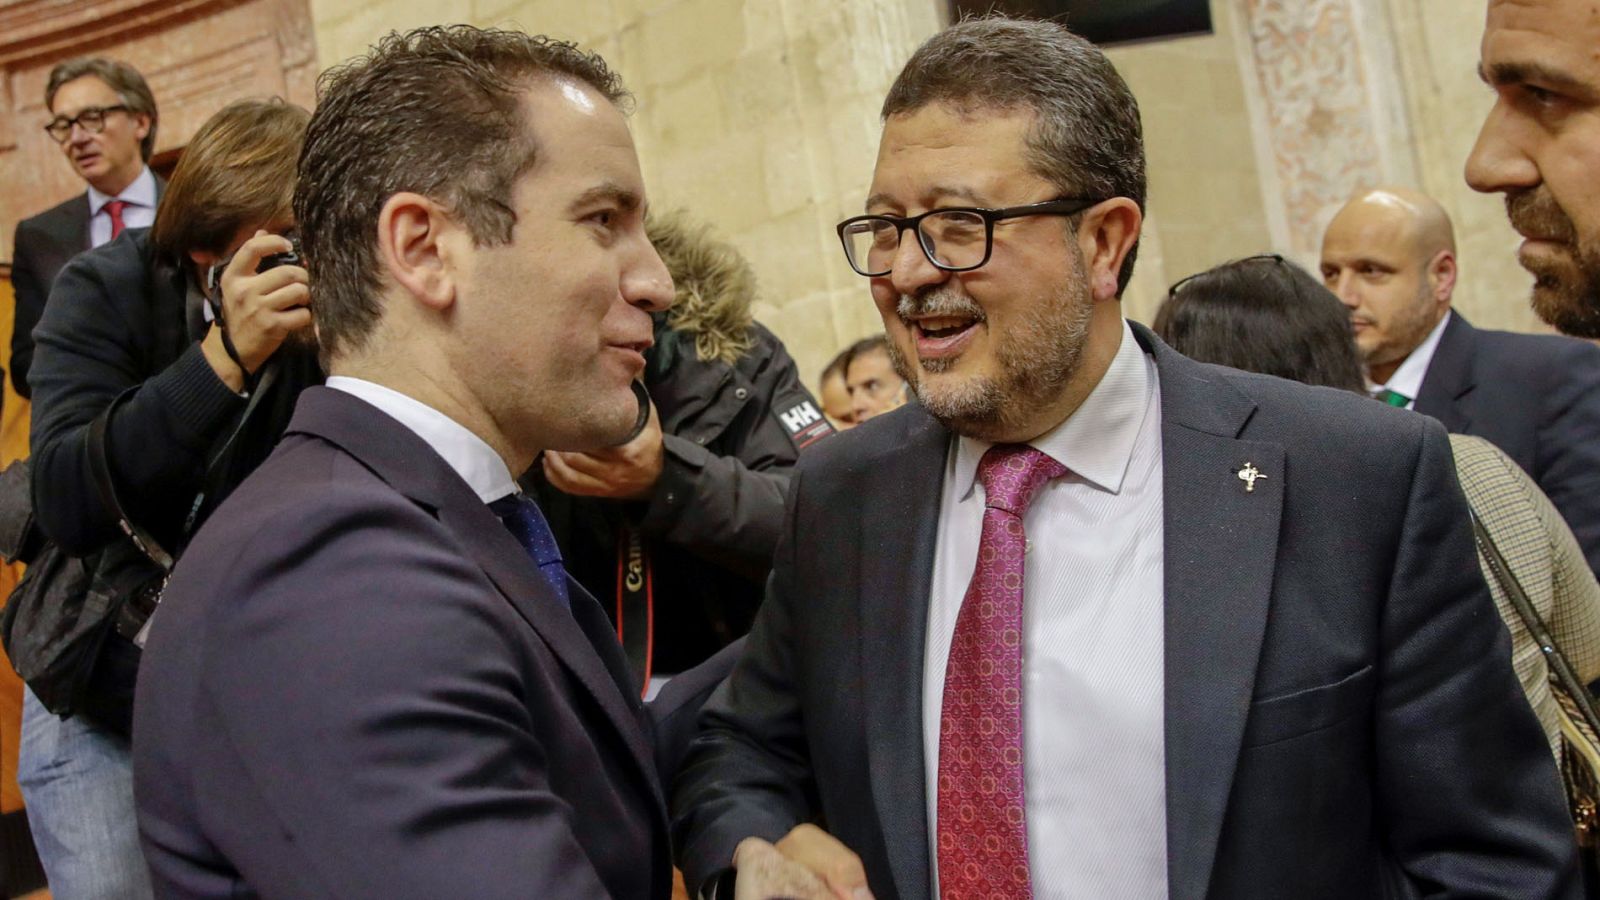 Andalucía: El PP pide "responsabilidad" a Cs y Vox para gobernar en Andalucía  - RTVE.es